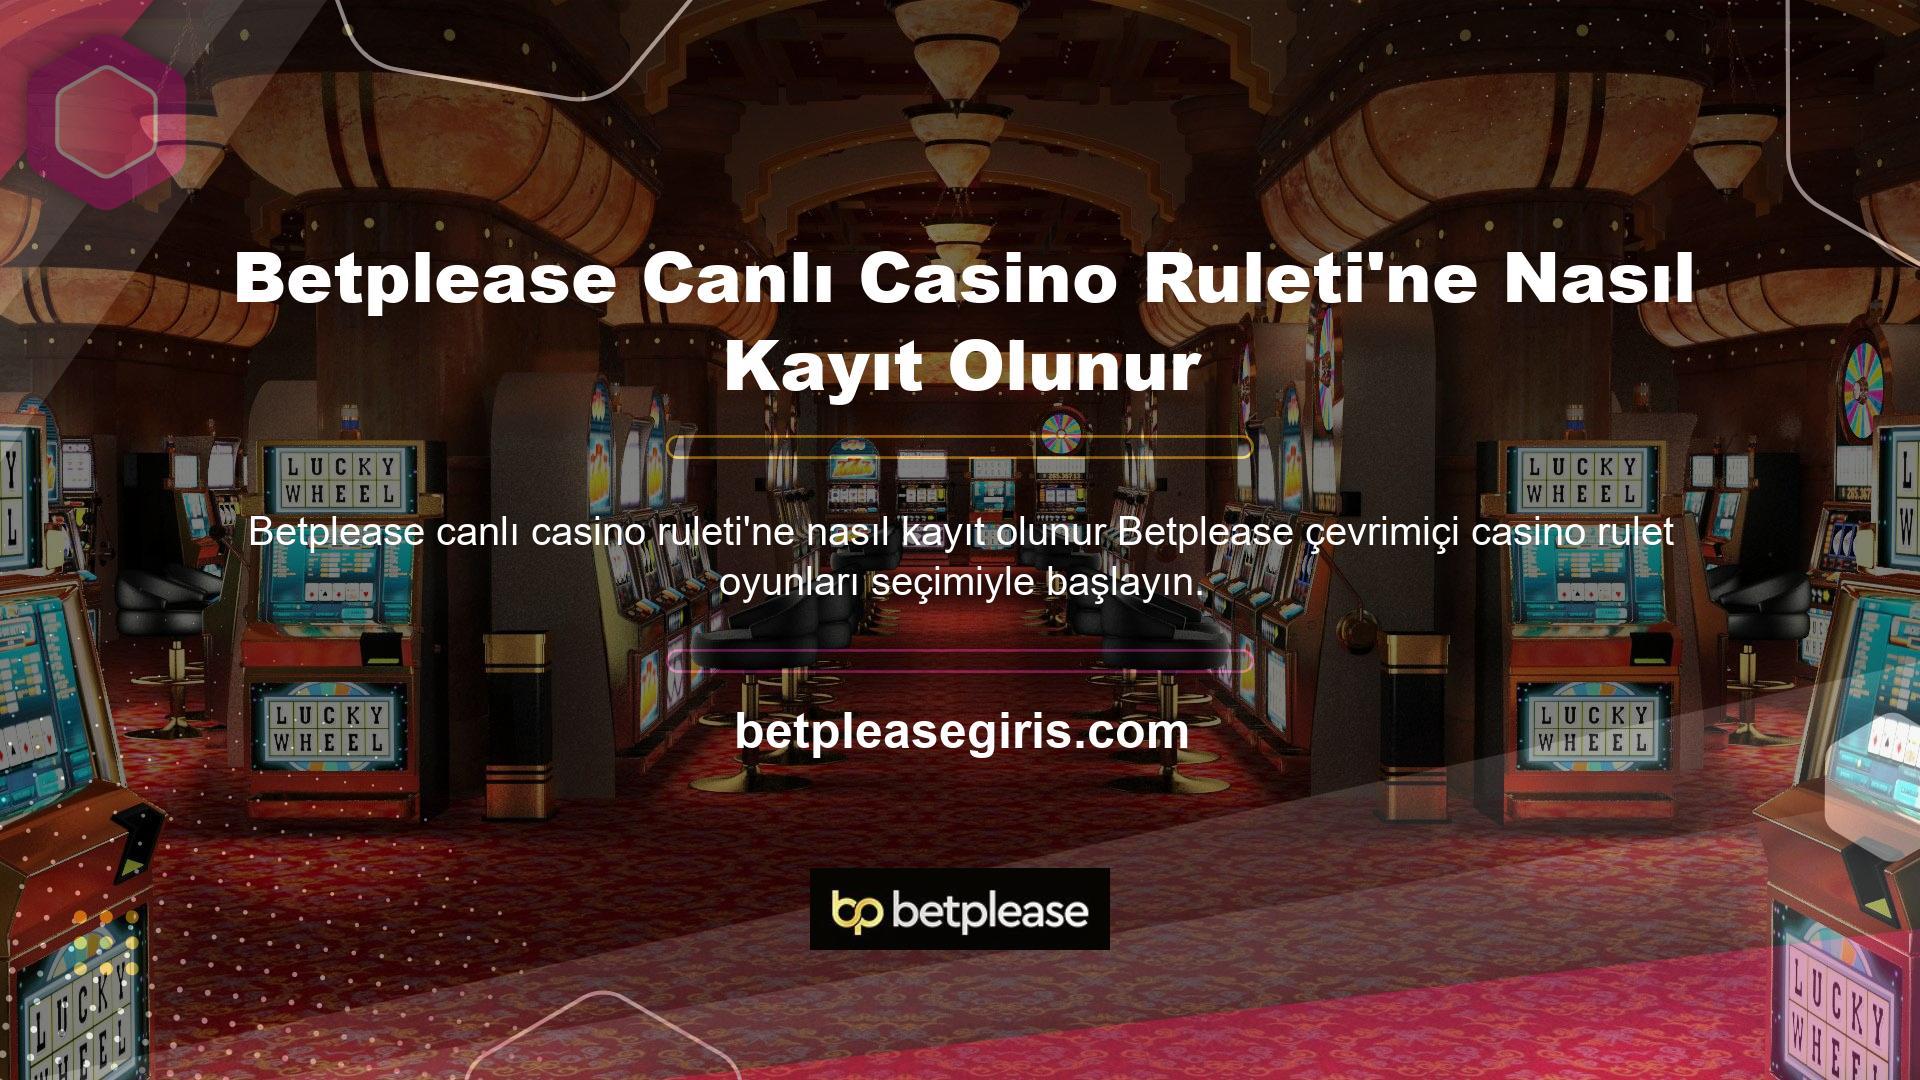 Betplease şu anda çok çeşitli casino oyunları sunmaktadır ve oyunlar sürekli olarak güncellenmektedir